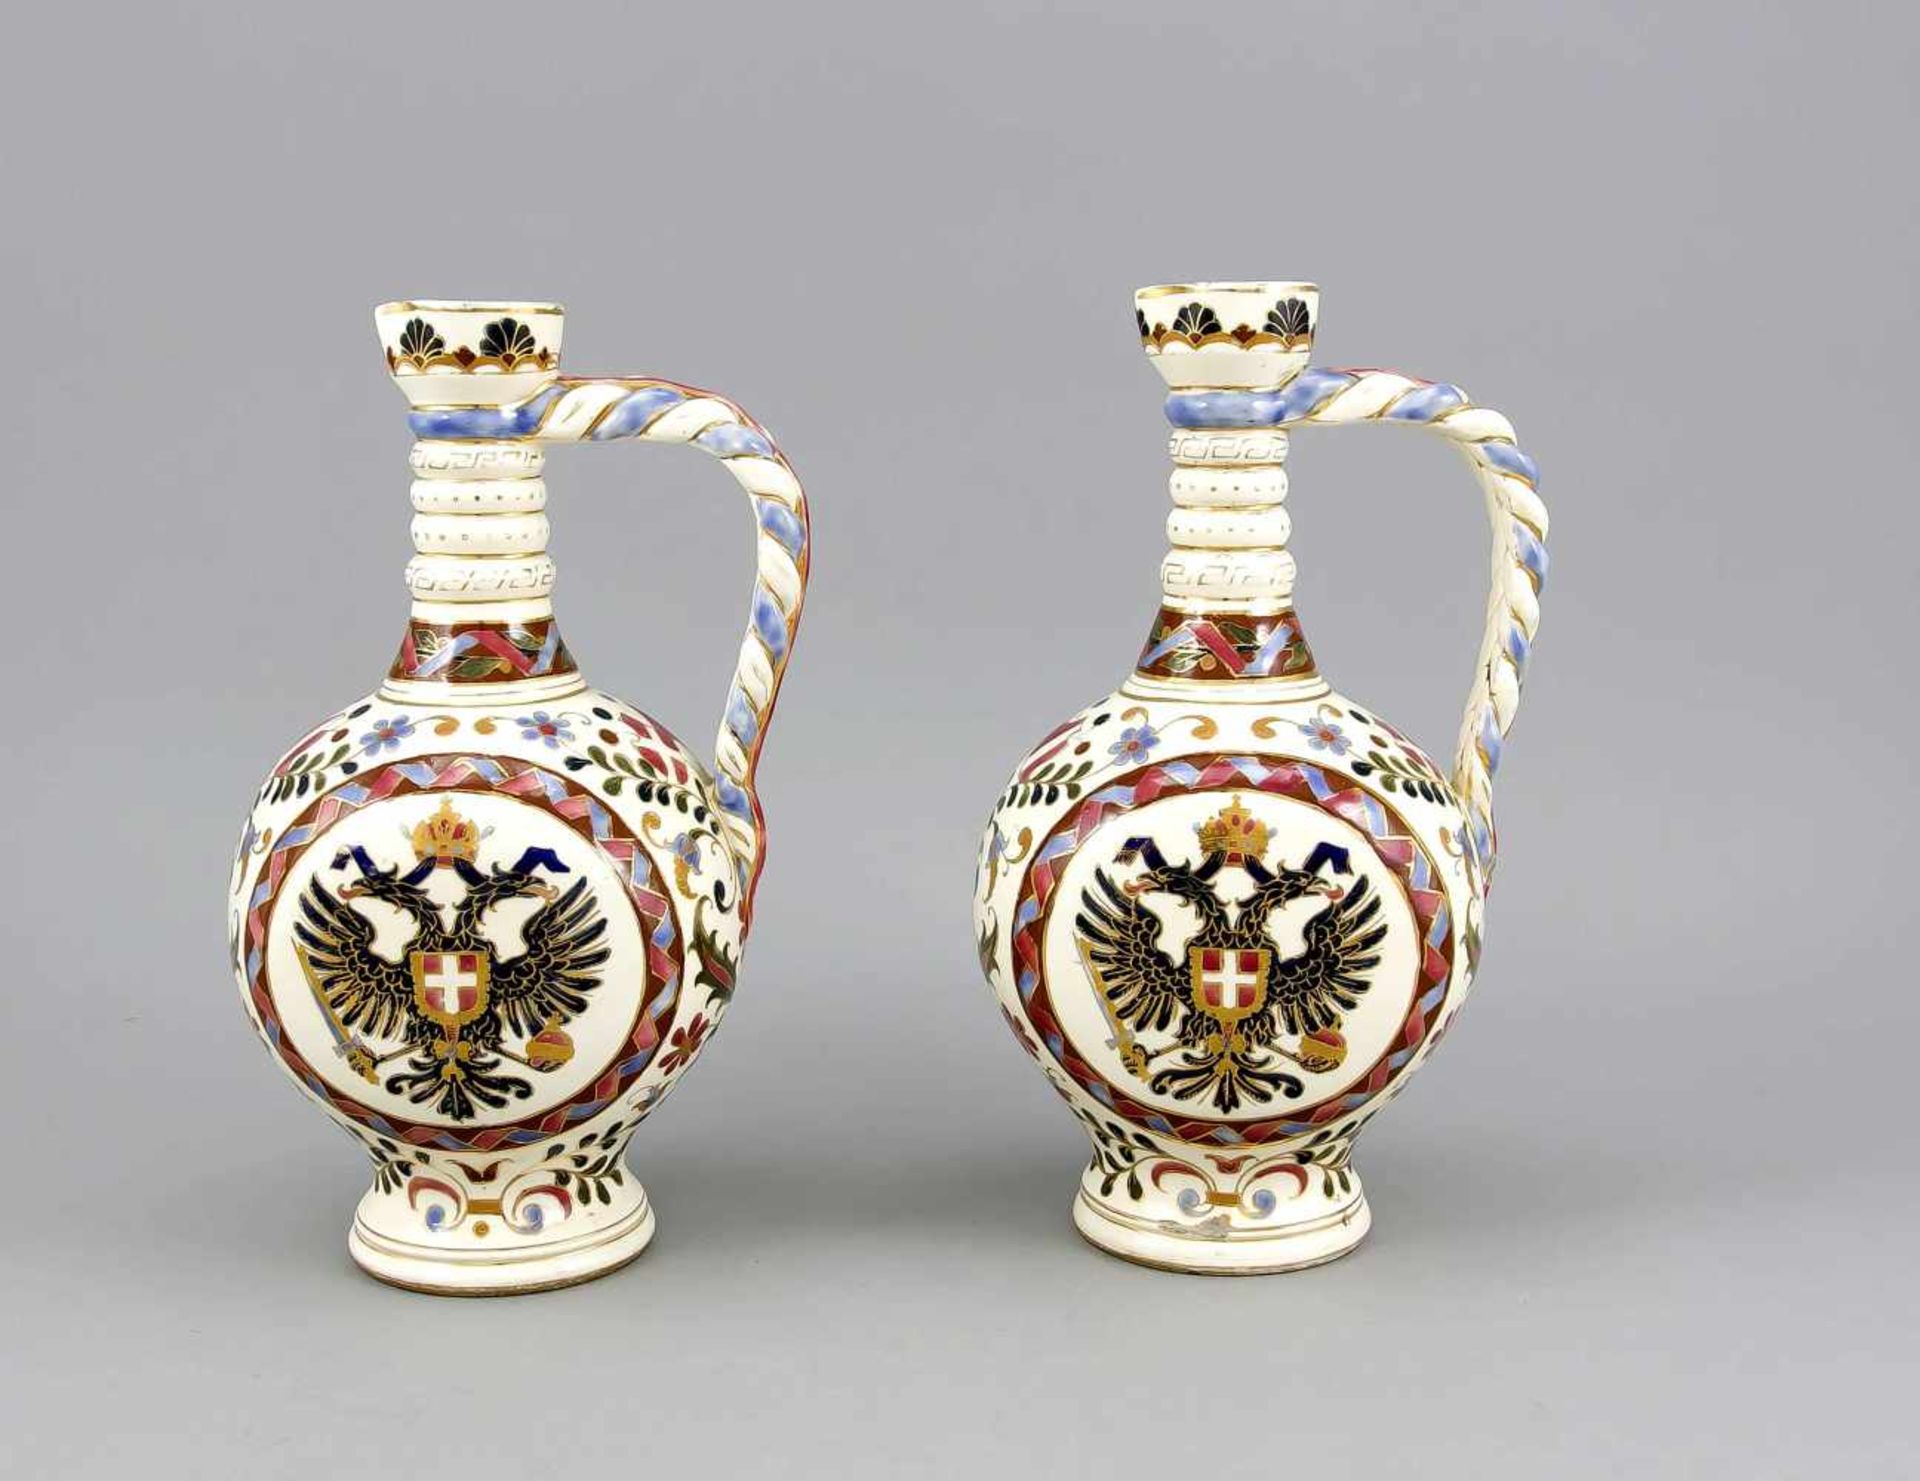 Paar Vasen mit österreichischem Doppeladler, w. Fischer, Budapest, Ende 19. Jh., Krüge mitrundem